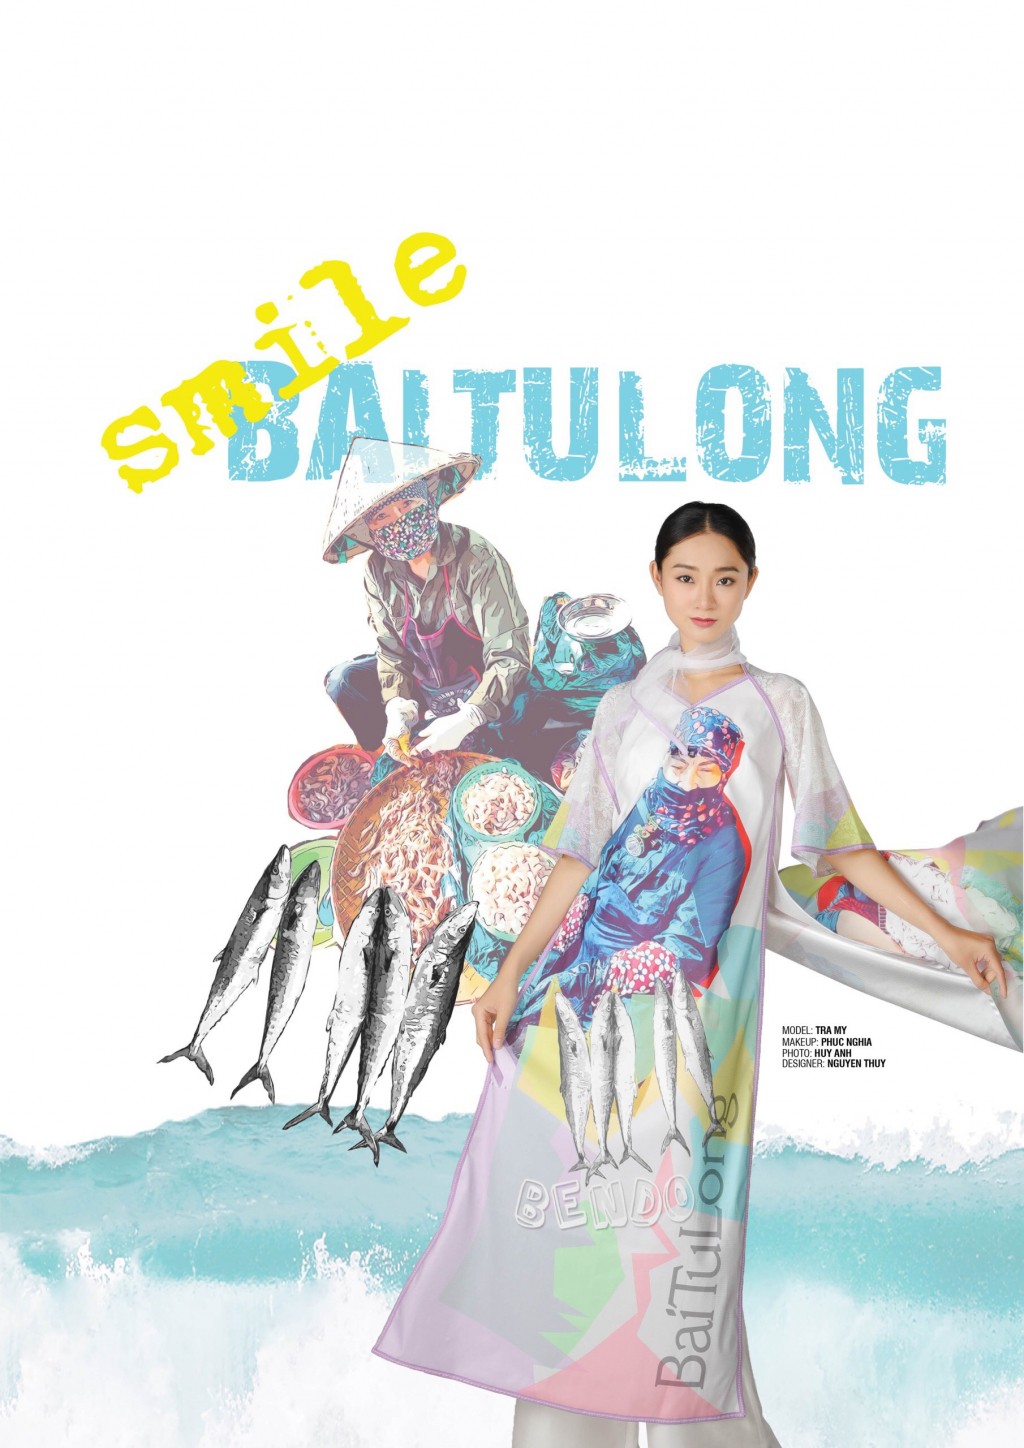 Ra mắt 20 bộ sưu tập áo dài lấy cảm hứng từ cảnh quan, thiên nhiên, con người Quảng Ninh